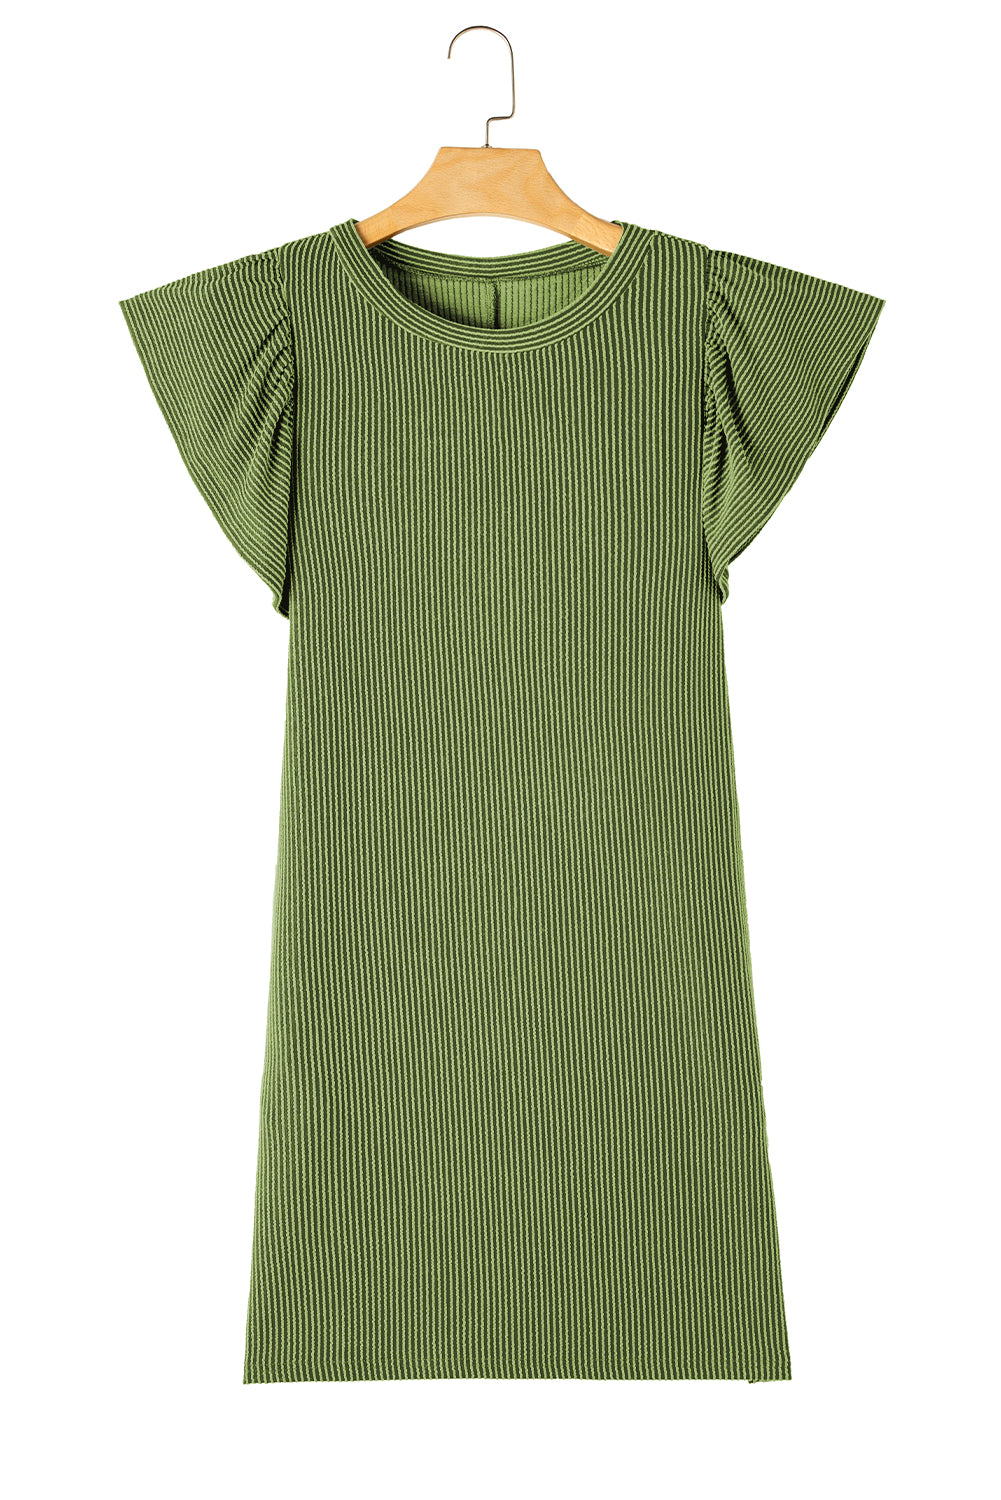 Travnato zelena rebrasta haljina s lepršavim rukavima